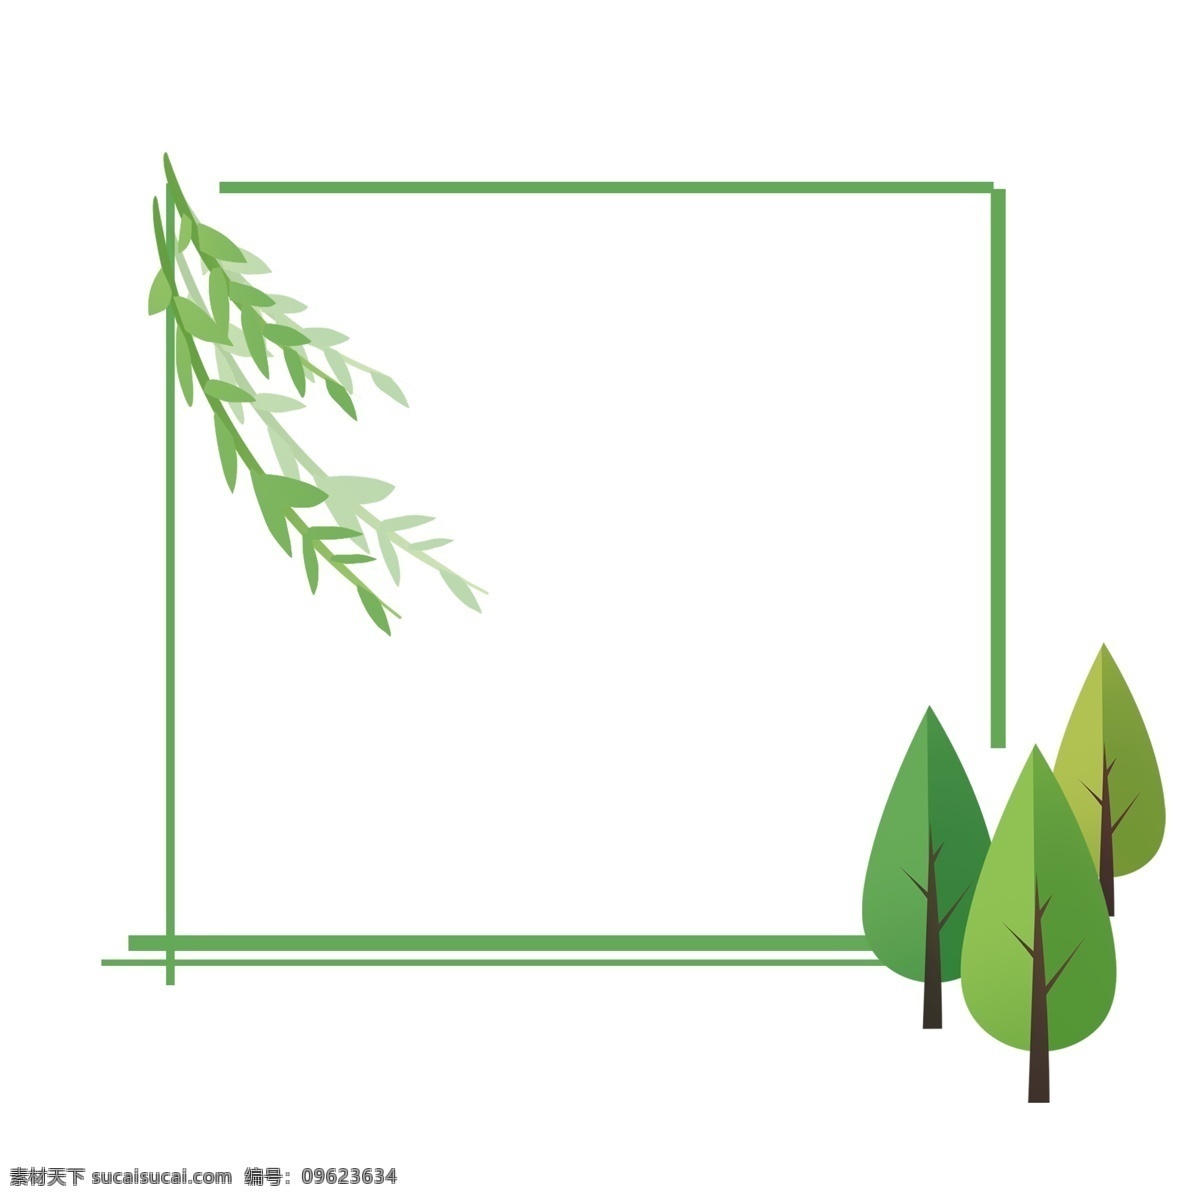 春天 绿色 装饰 边框 柳树 枝条 树 植物 绿植 草木 自然 生态 大自然 树木 春季 绿色植物 叶子 装饰图案